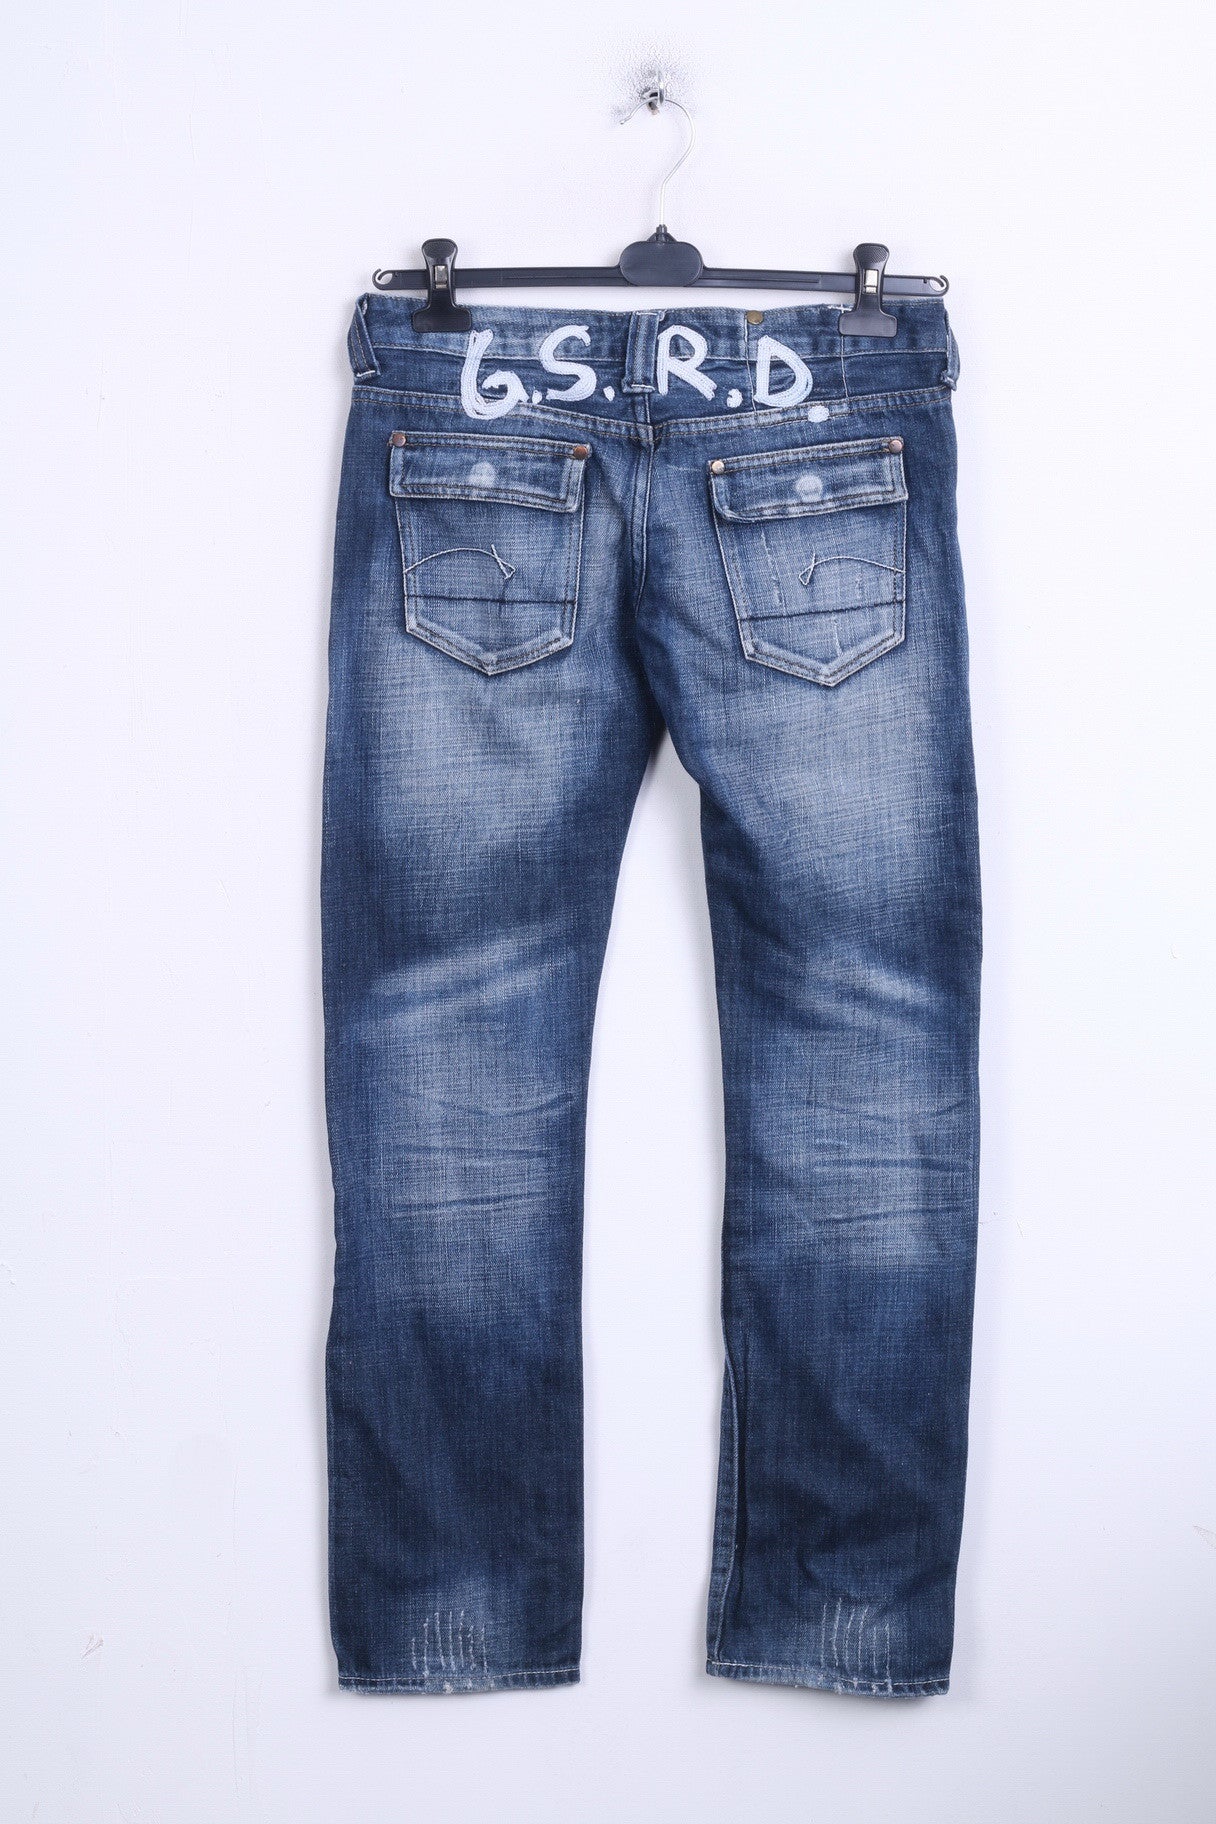 G-STAR Mens W30 L32 Trousers Denim Jeans Cotton - RetrospectClothes